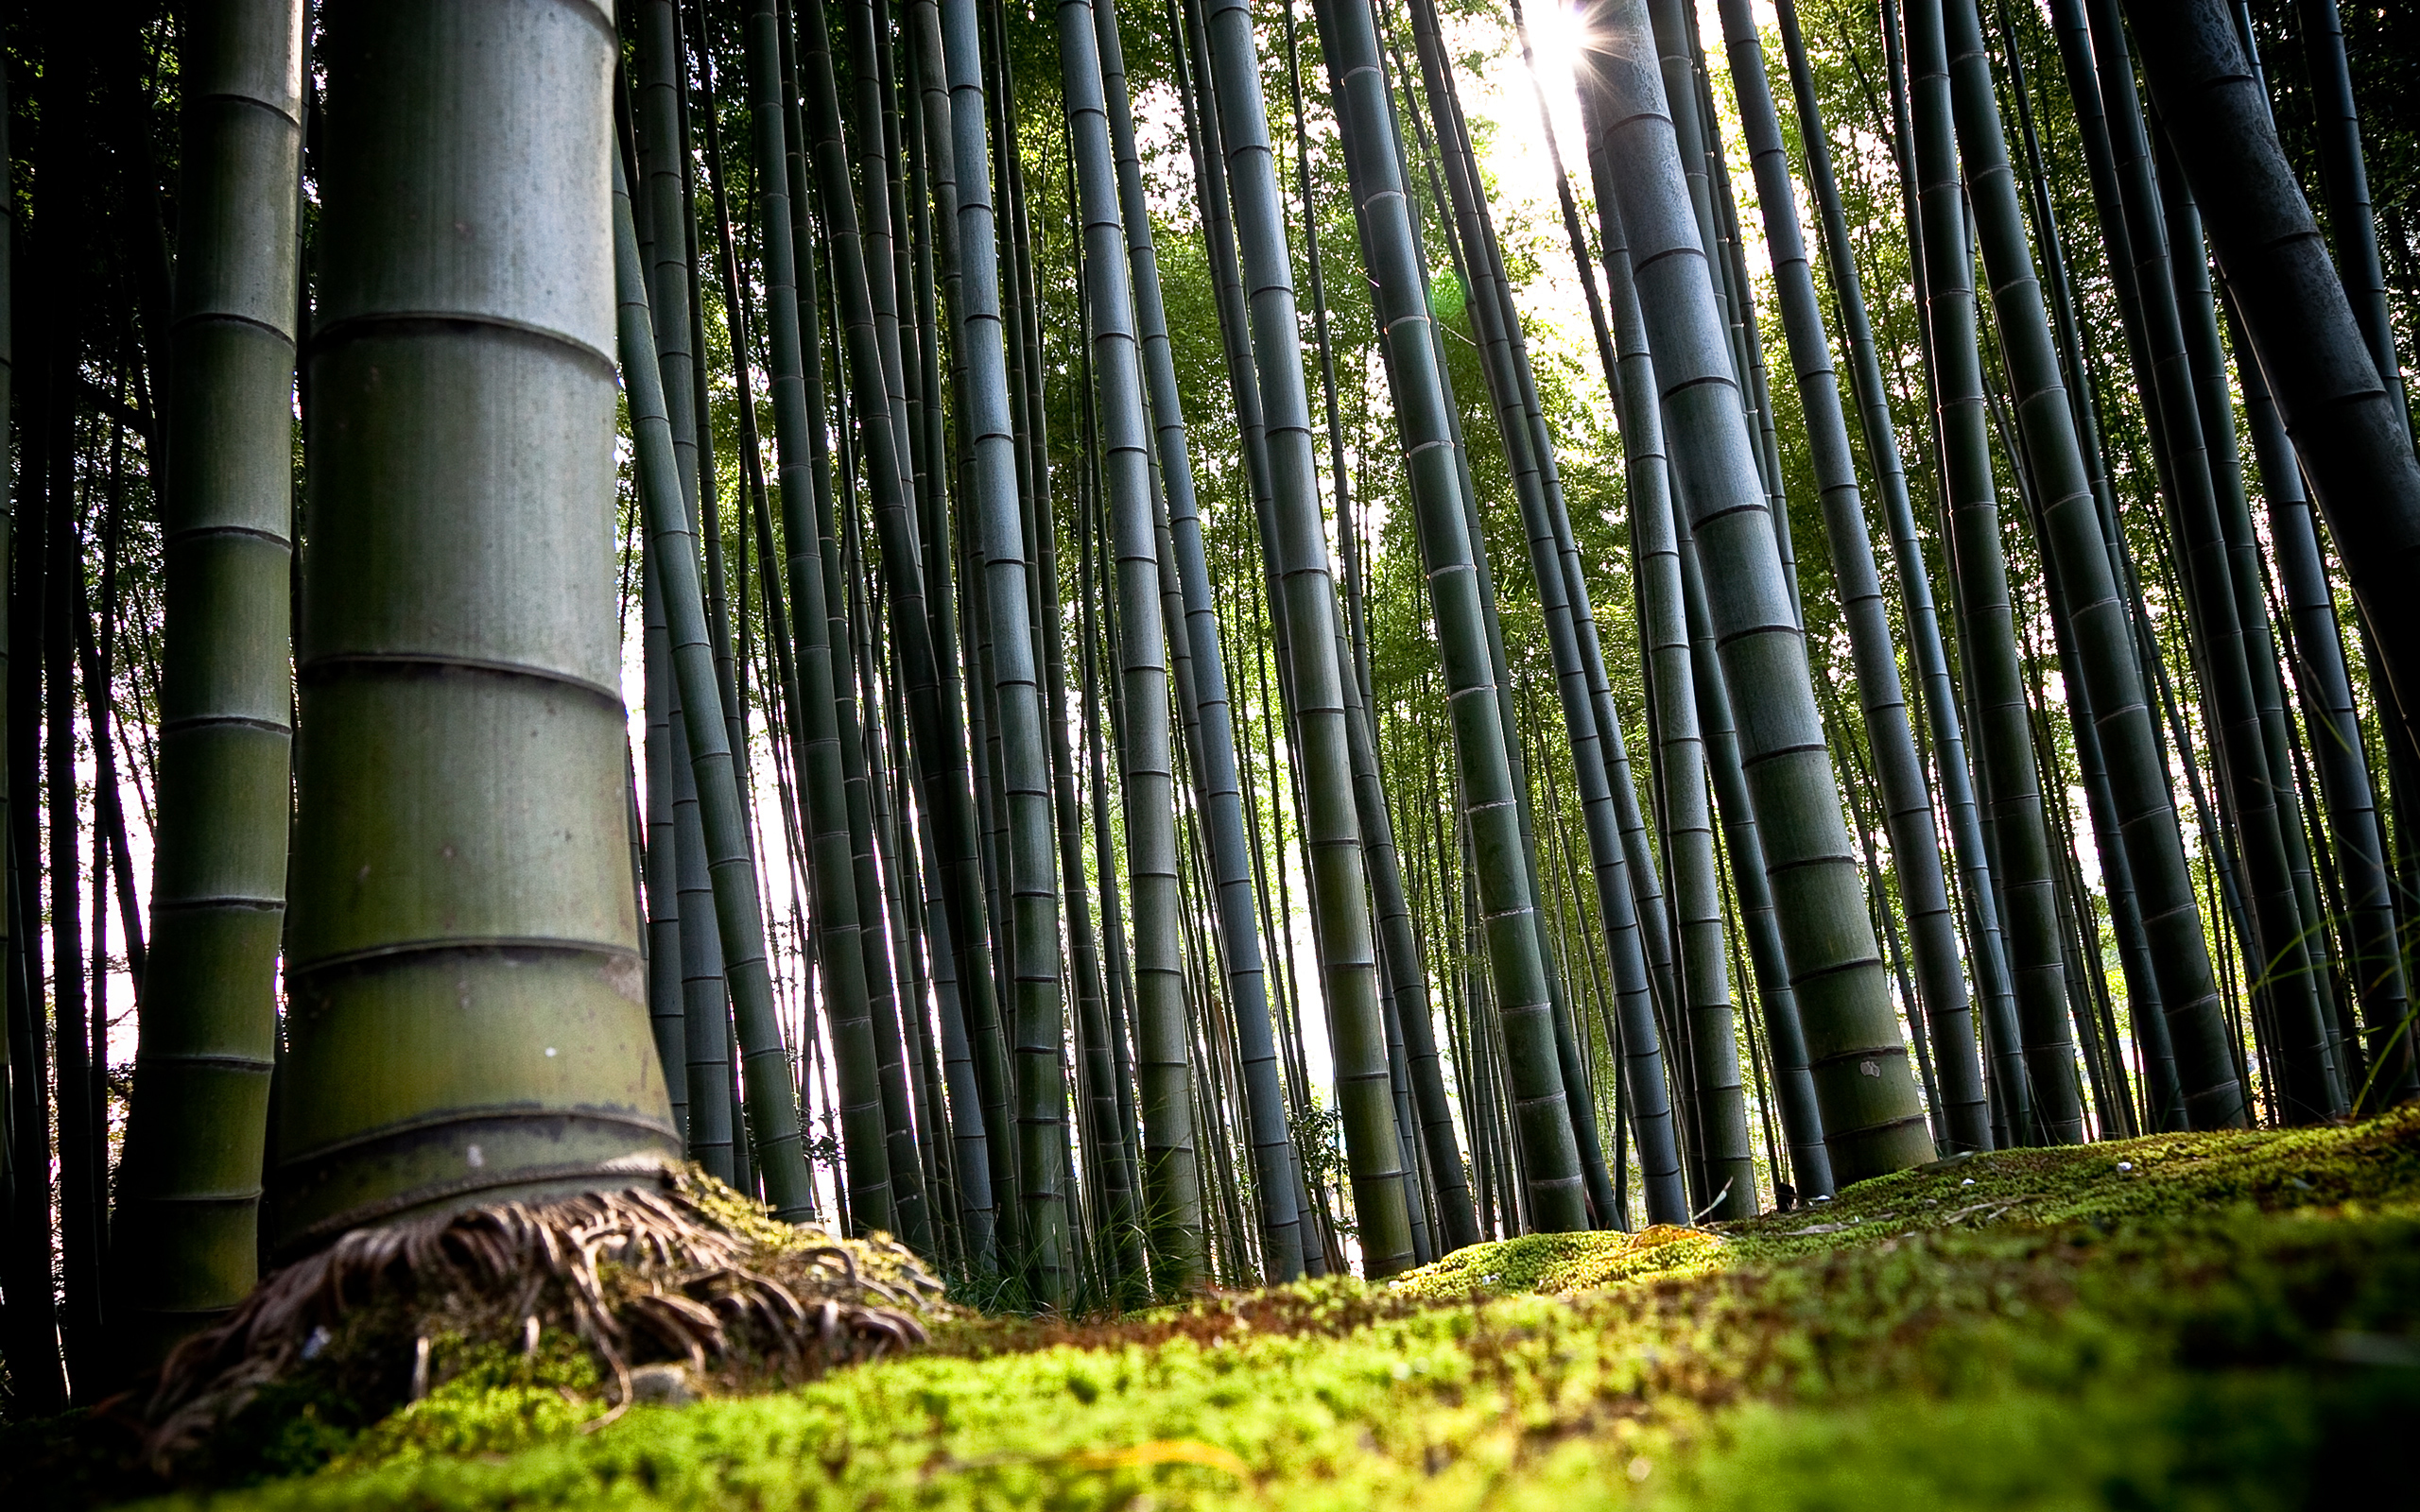 Є відомості, що довжина стебла у бамбука, що росте на острові Ява, досягає 51 метра